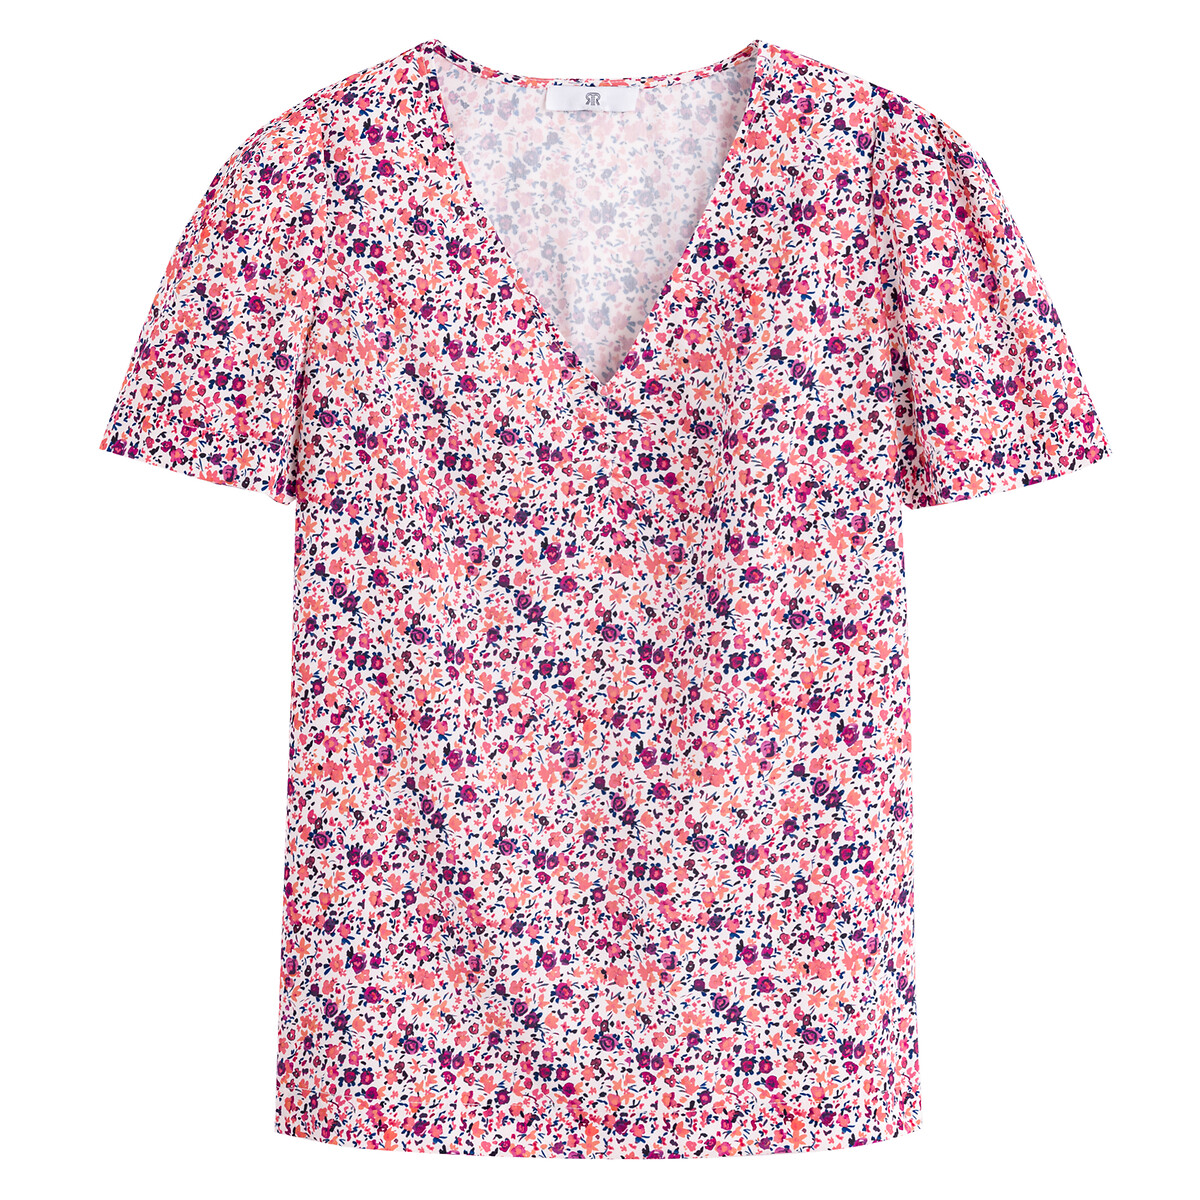 Blusa lisa com decote em V, estampado floral, mangas curtas